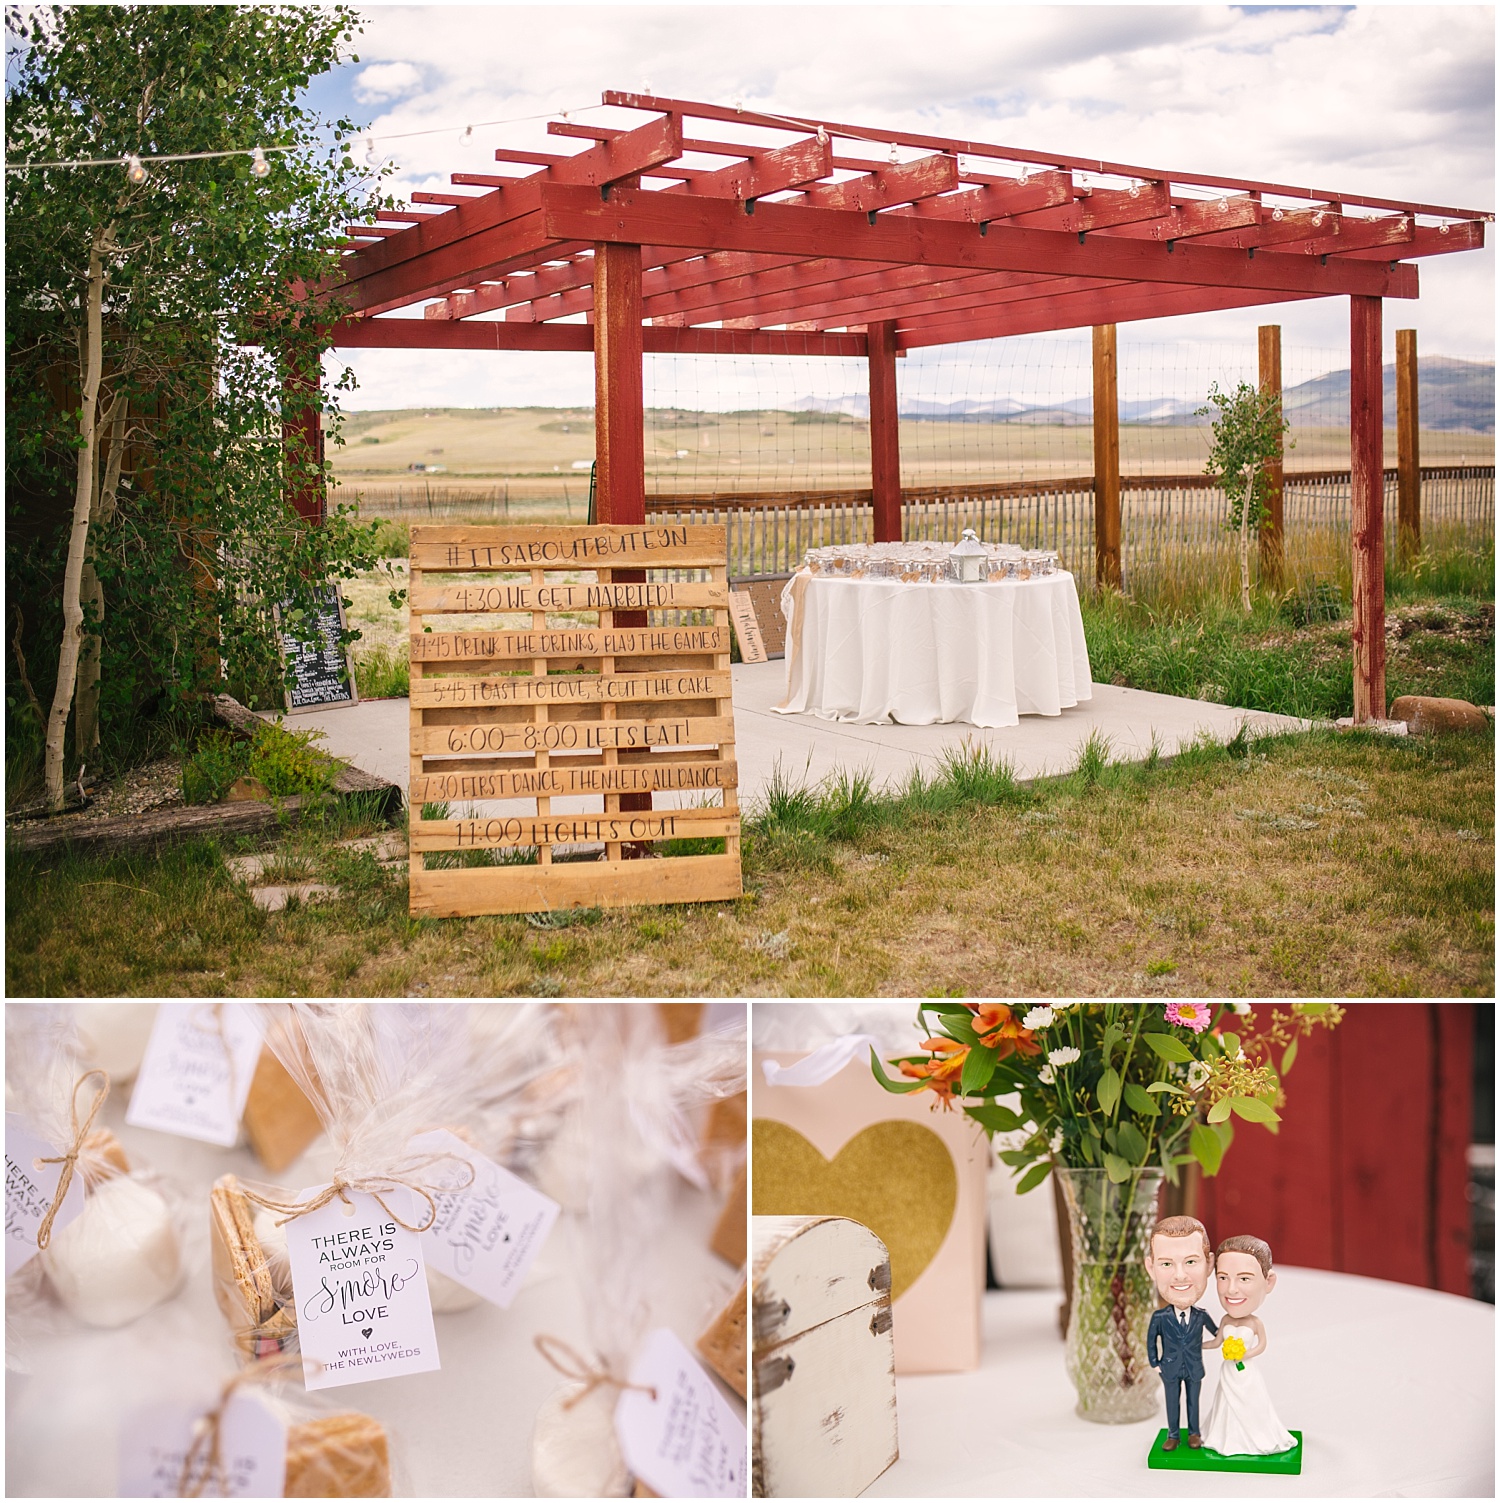 Rustic wedding details at Guyton Ranch in Colorado